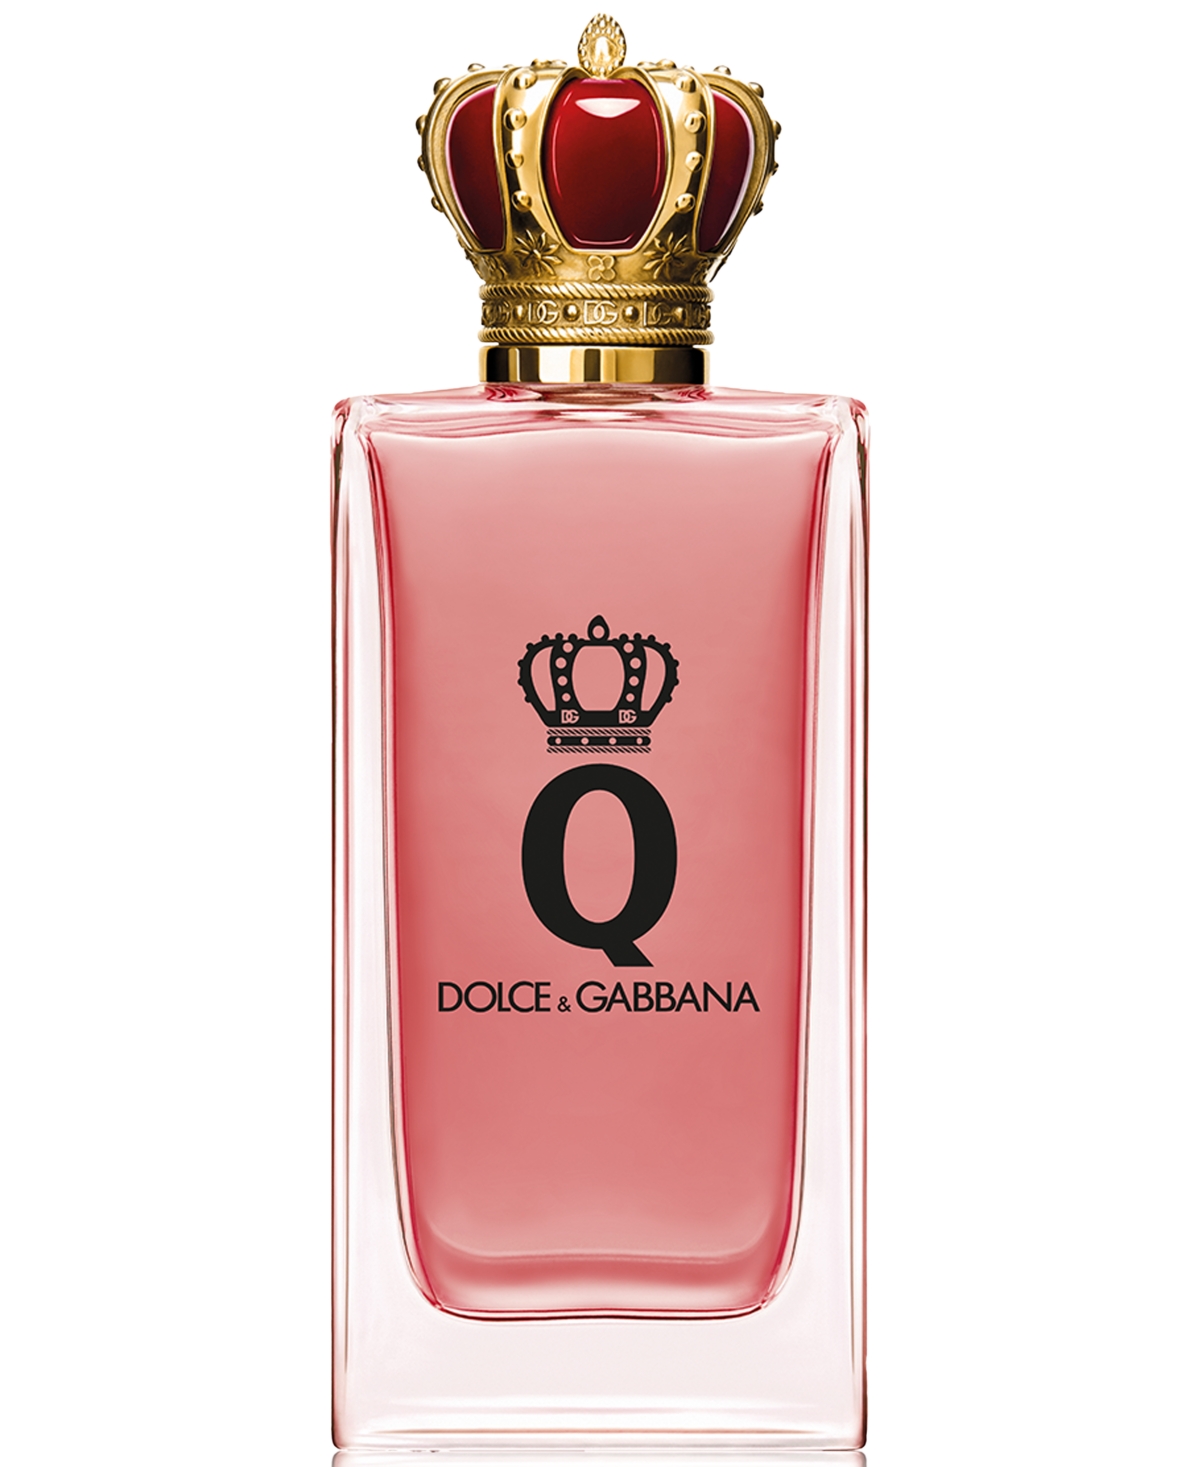 Dolce&Gabbana Q Eau de Parfum Intense, 3.3 oz.